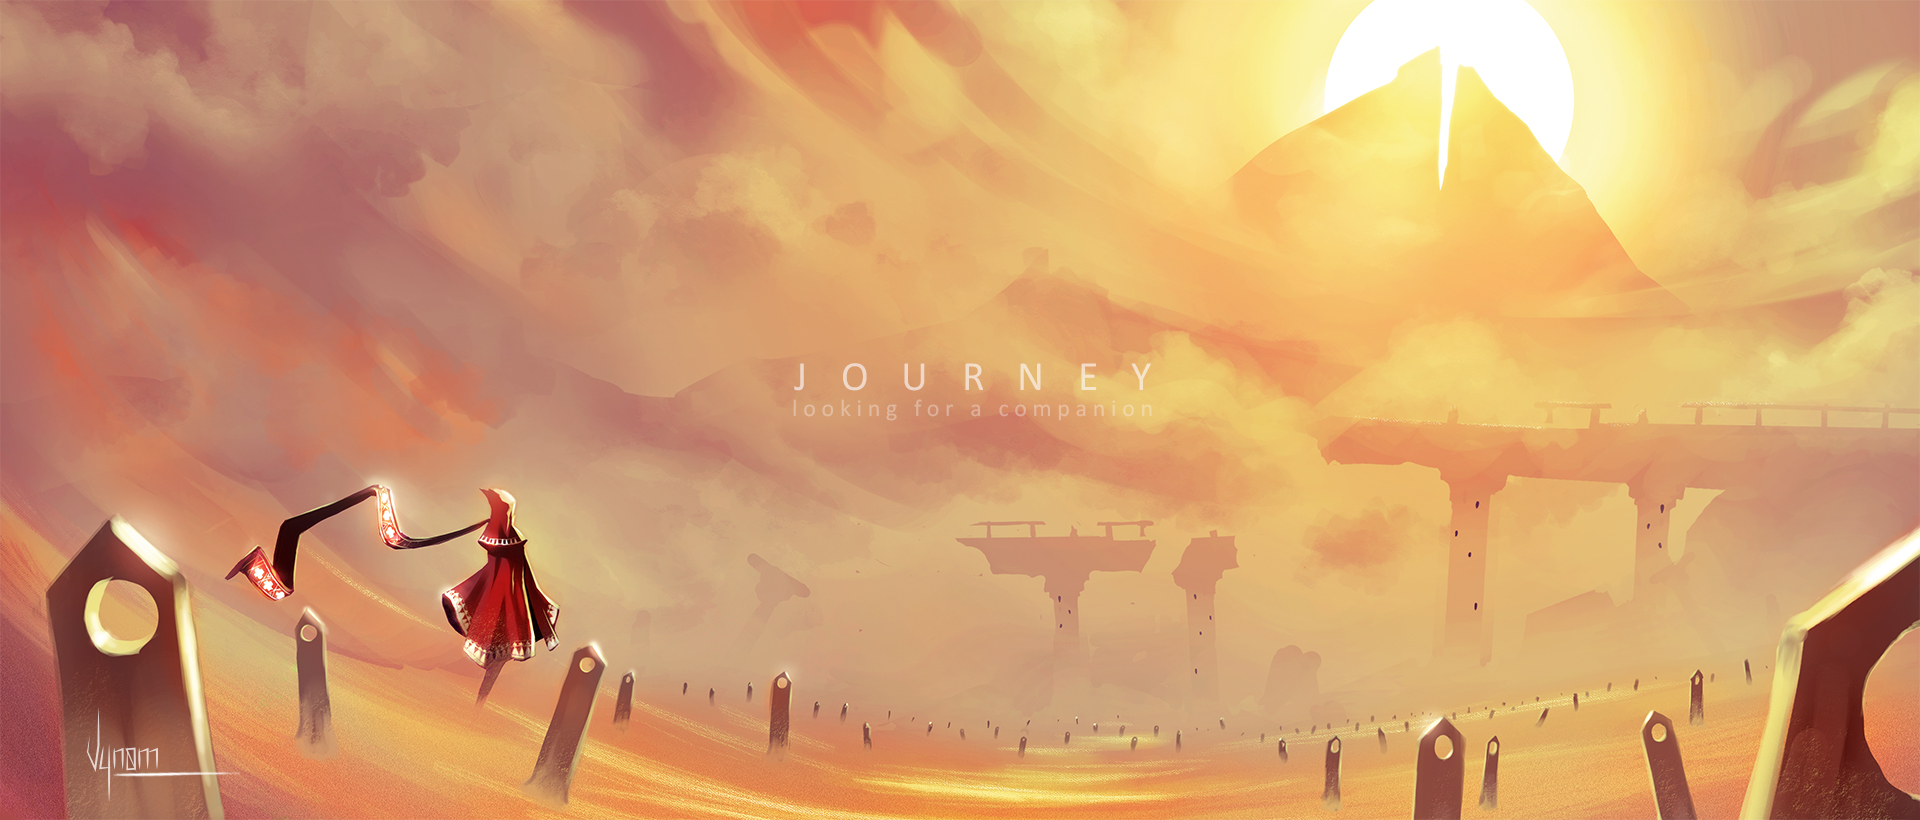 Full journey. Journey игра. Journey игра Art. Journey 2012. Journey пейзажи.